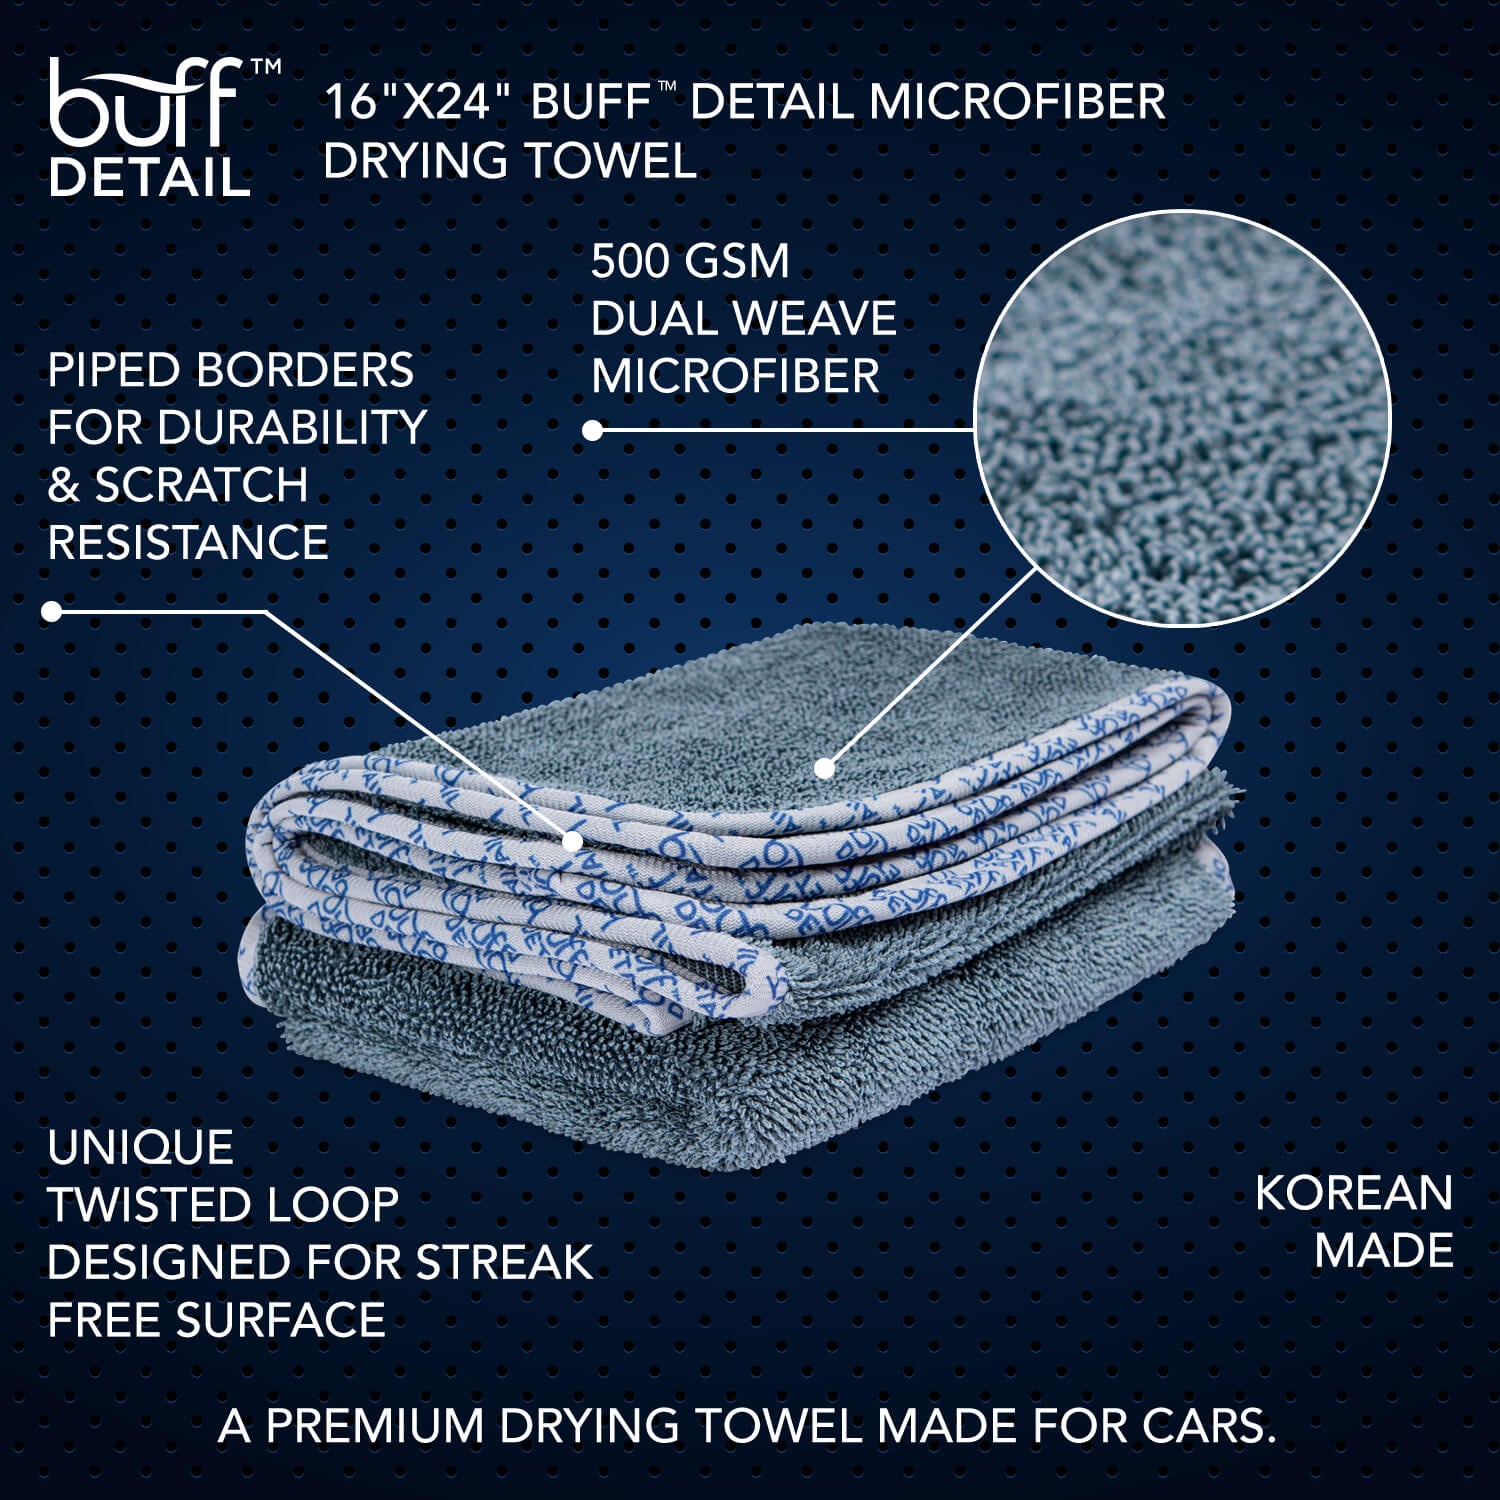 Toalla de microfibra para secado Buff™ Detail de 16" x 24" 